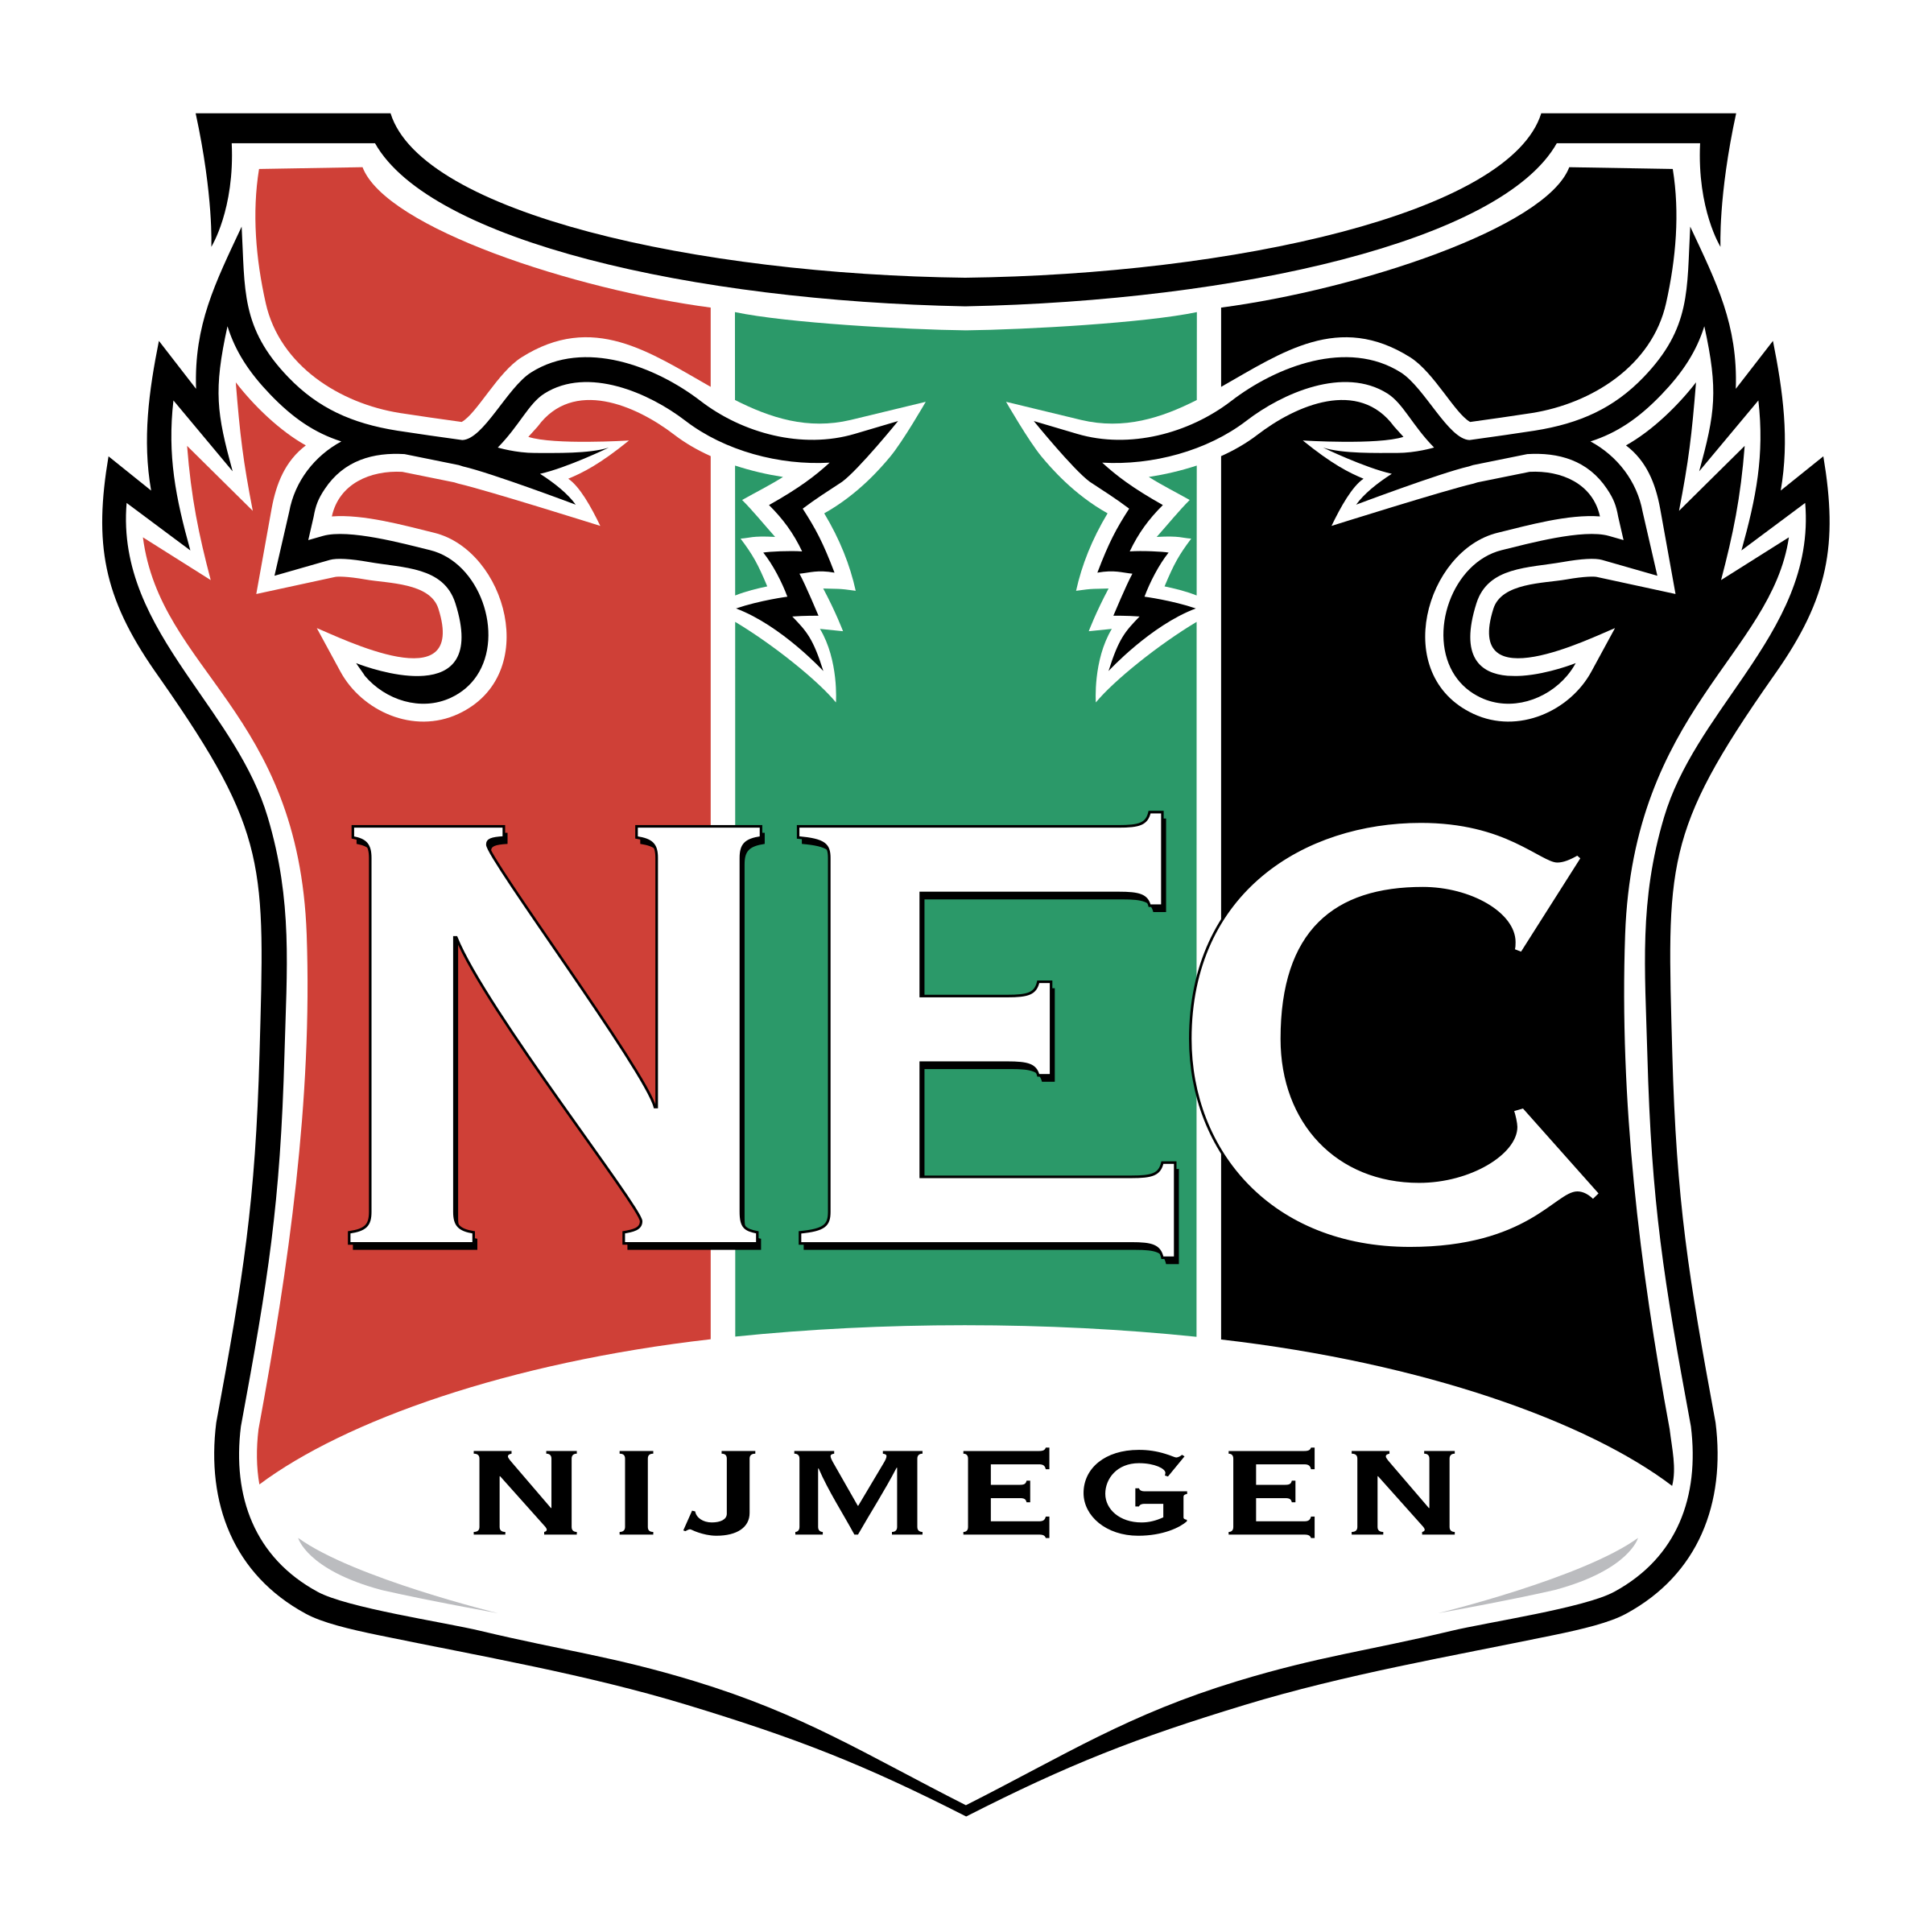 nec-nijmegen-logo-png-transparent